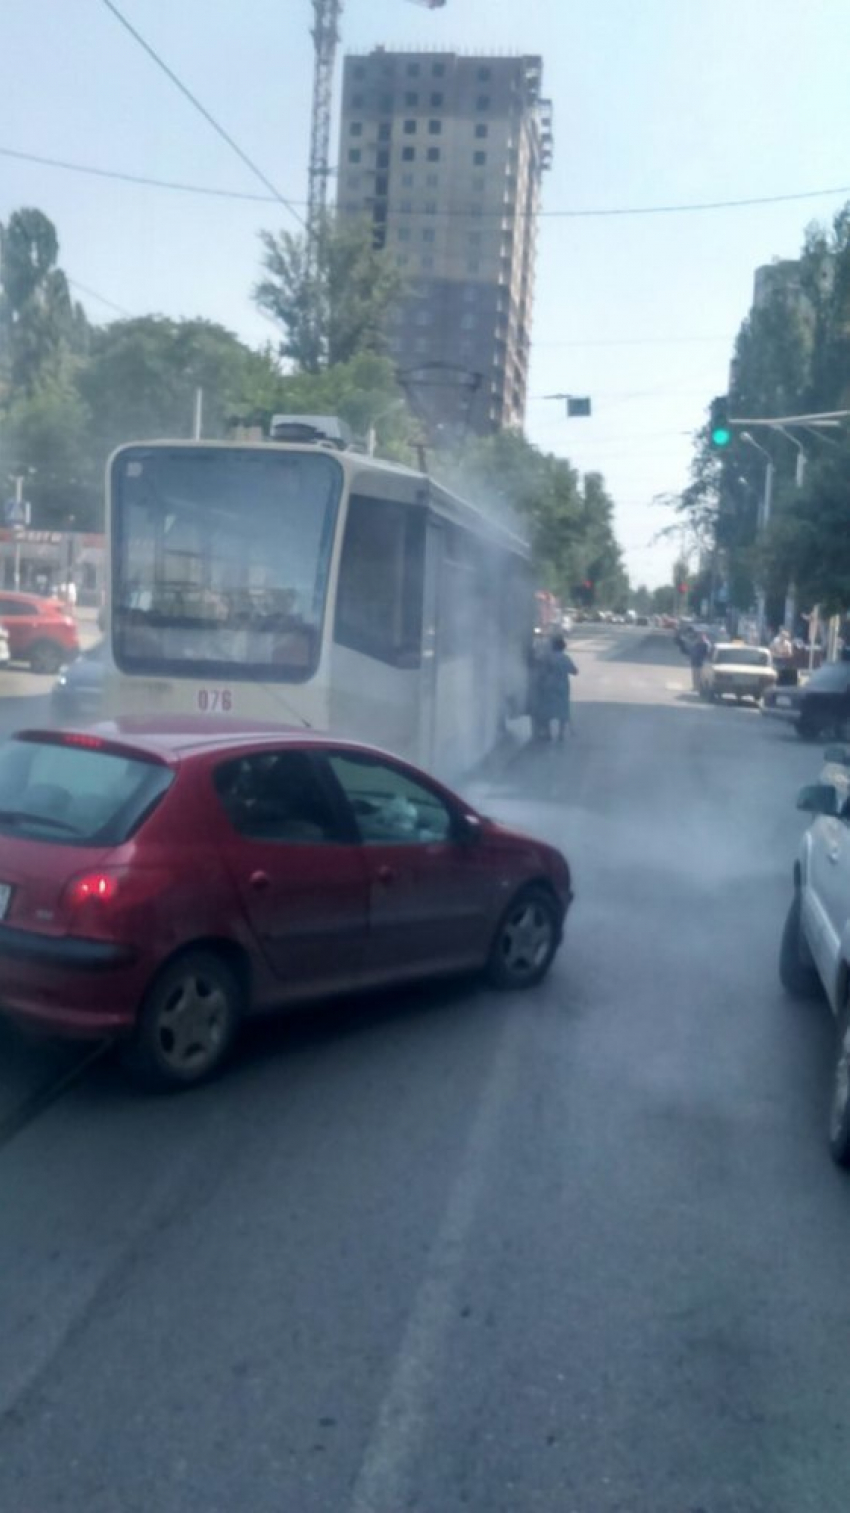 Трамвай во время движения загорелся на улице Горького в Ростове